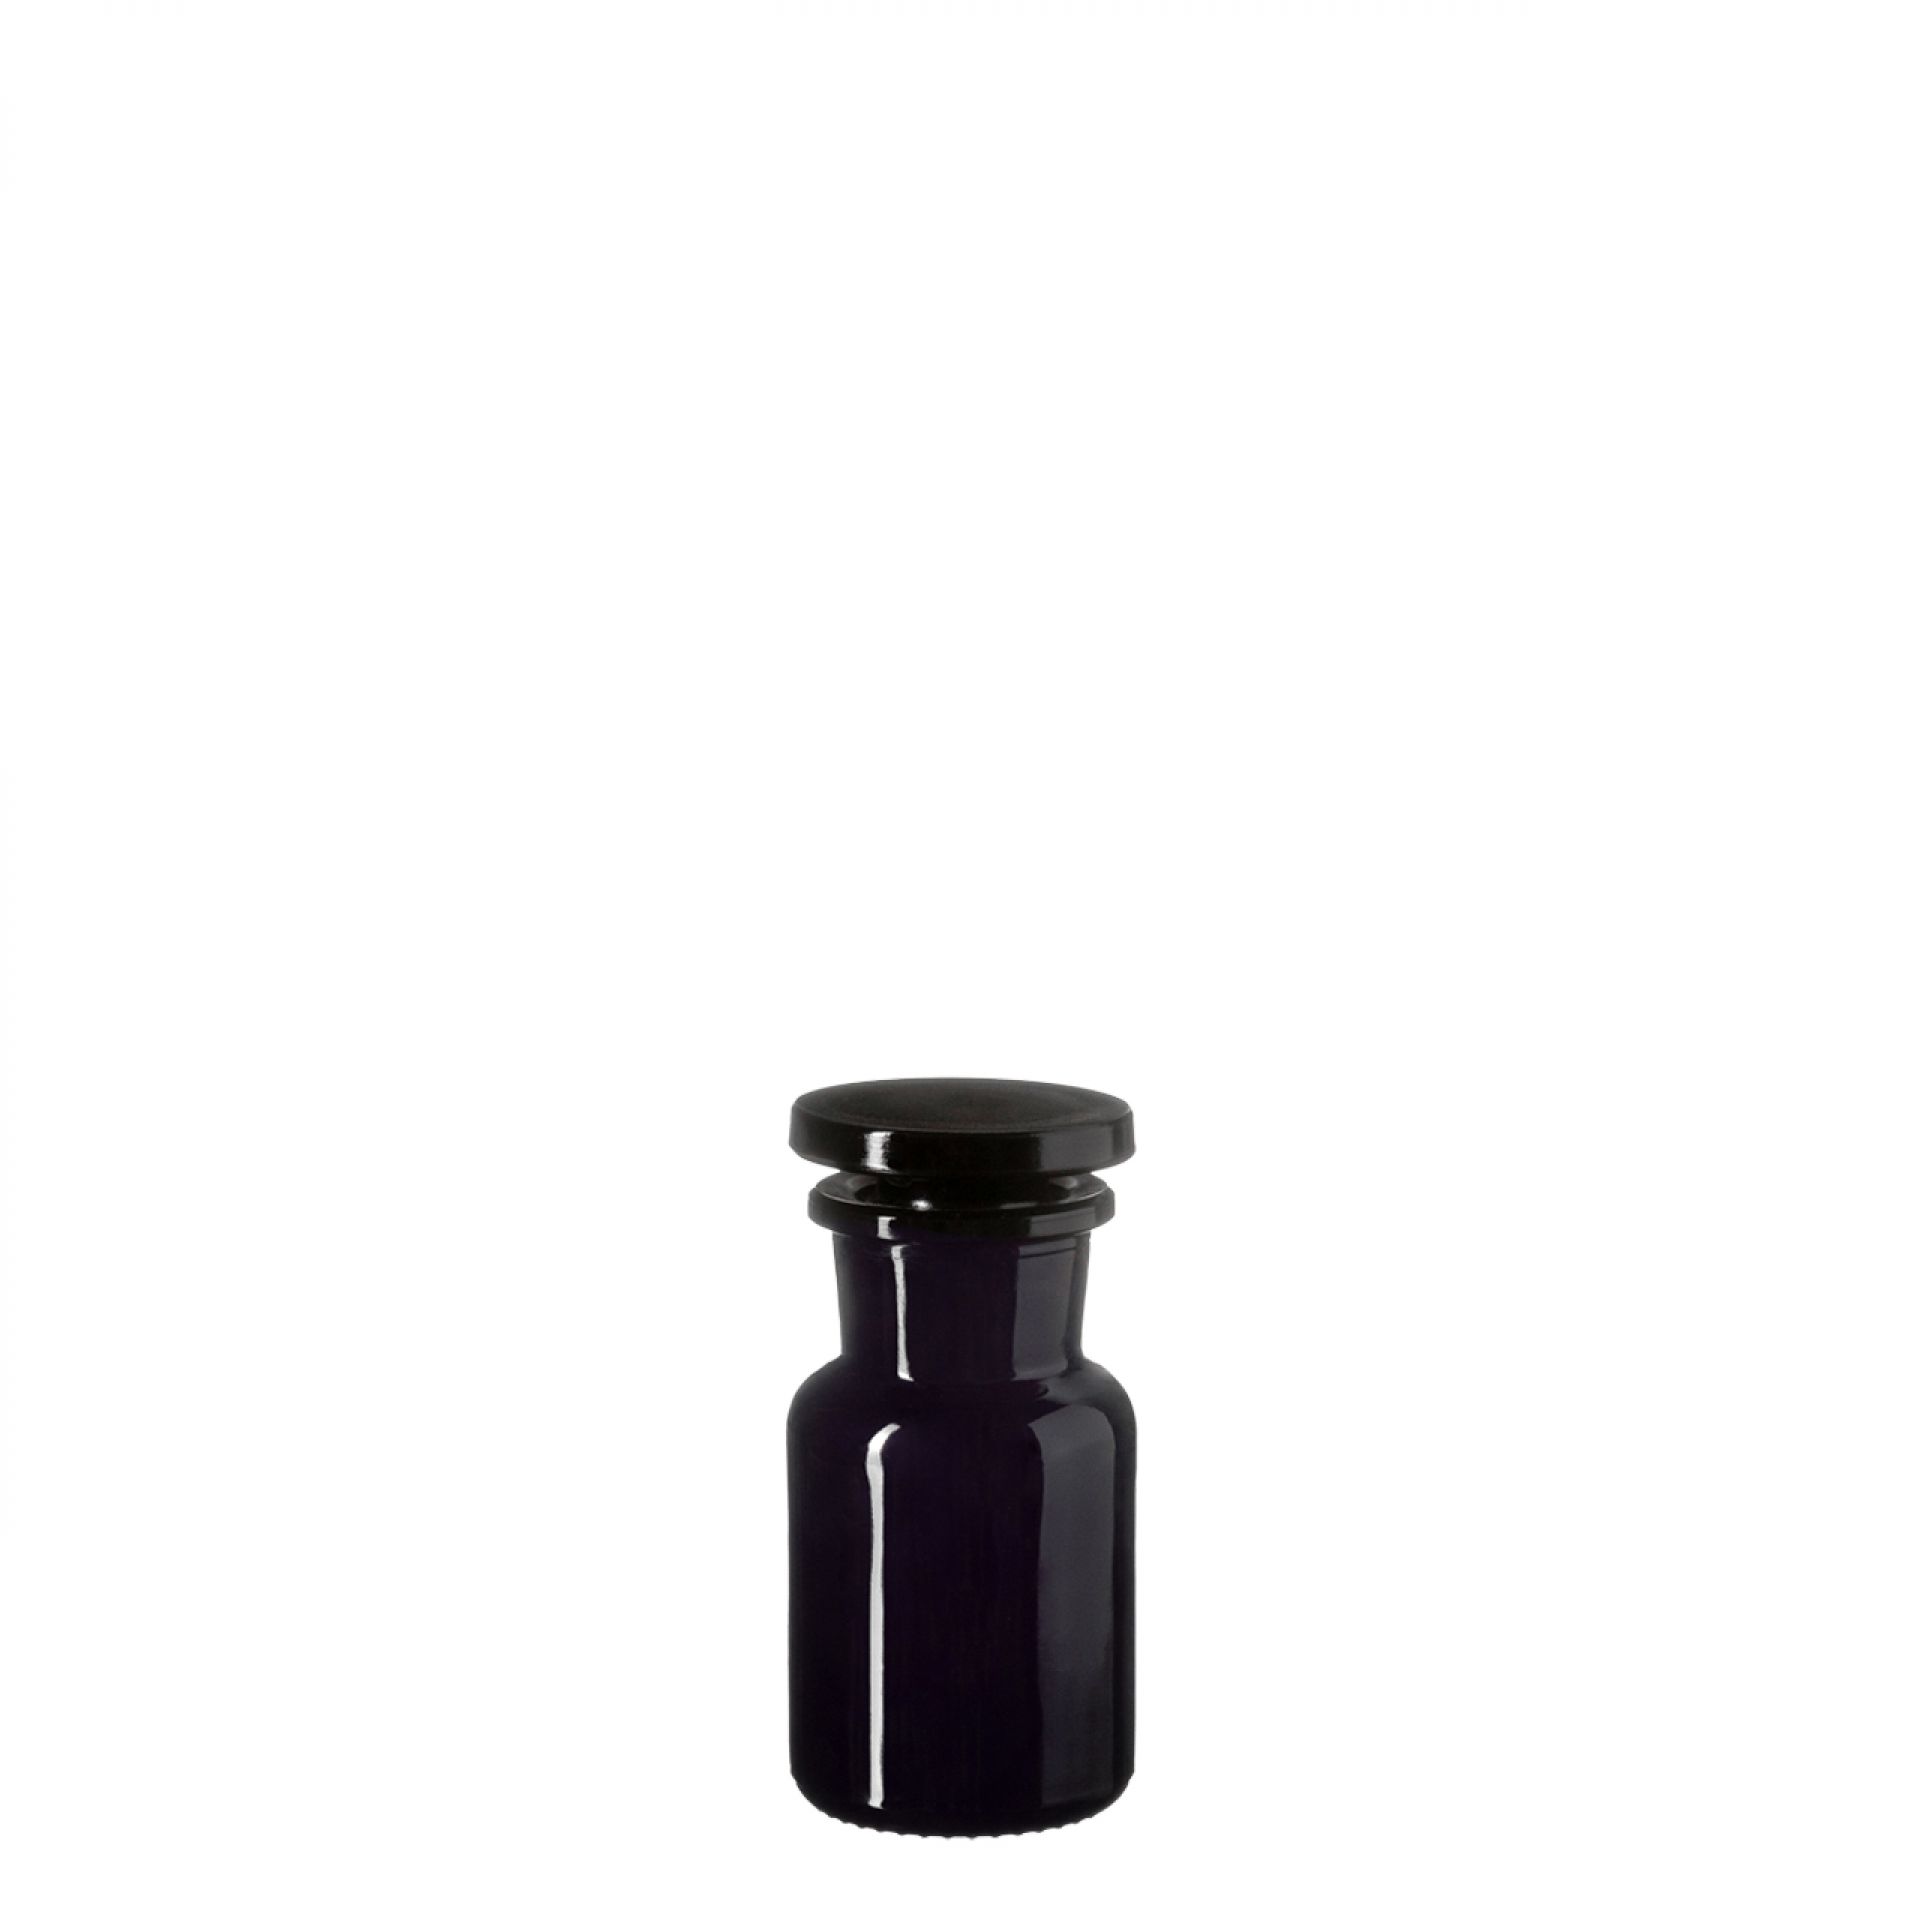 Apothecary jar Libra 50ml, glass stopper, Miron